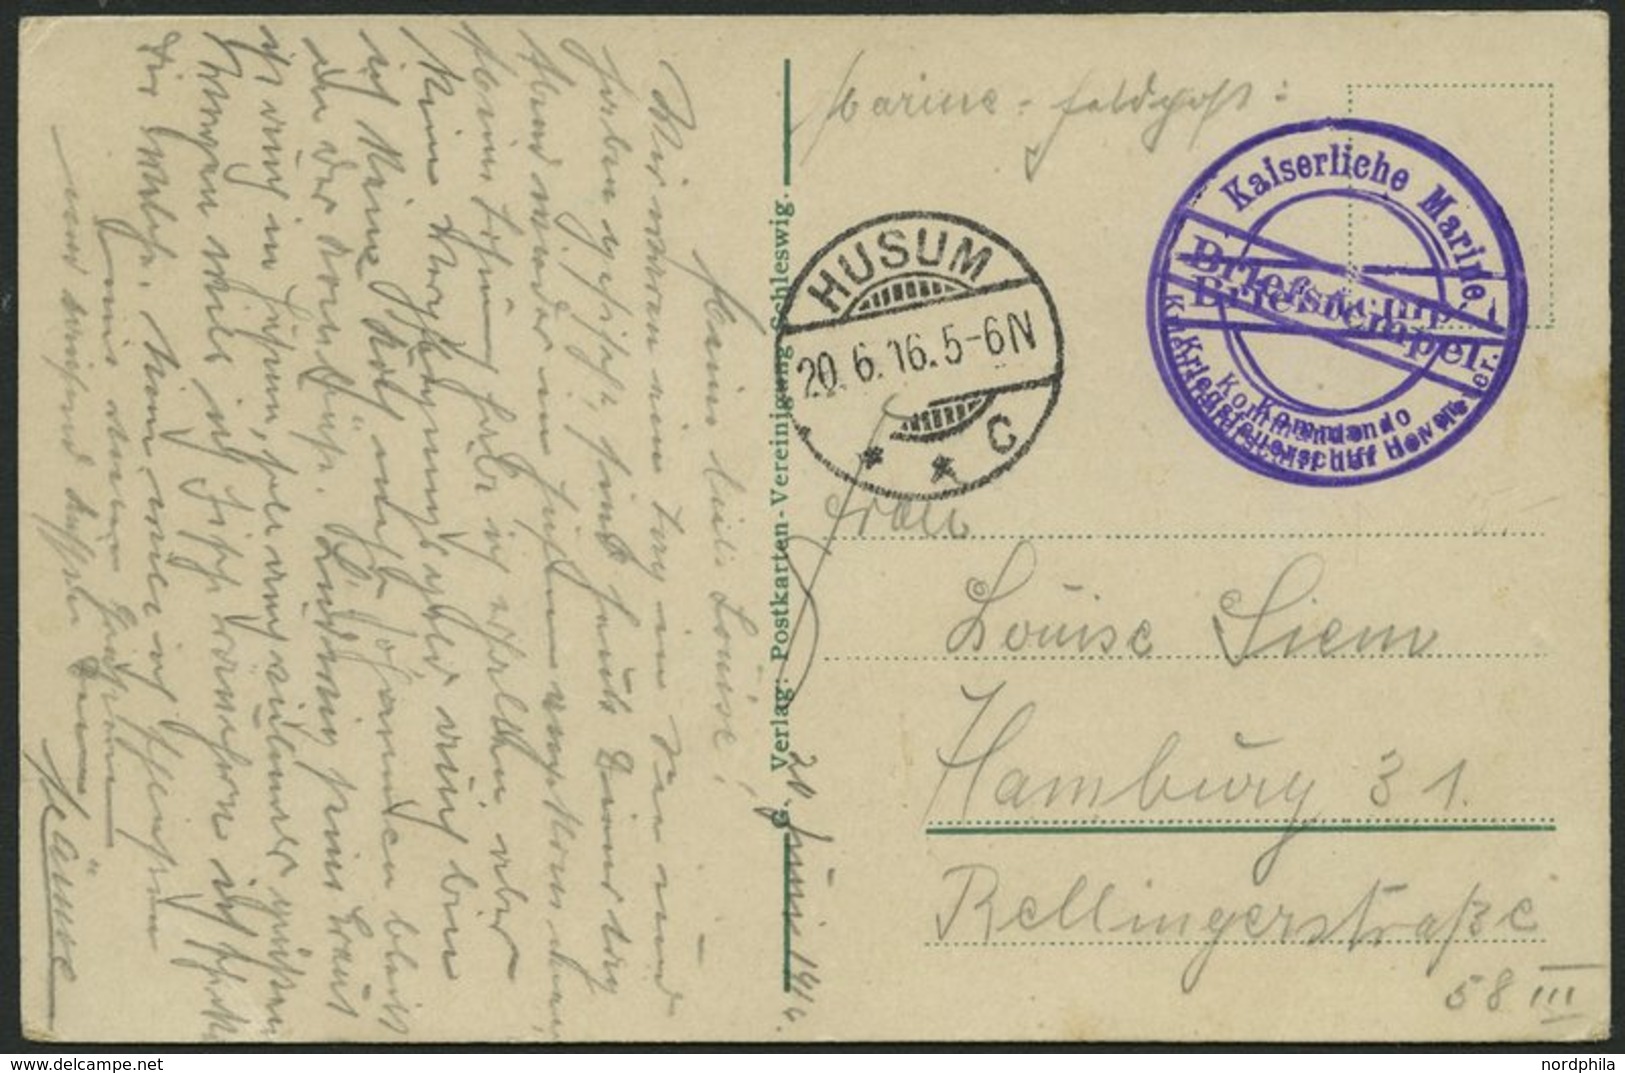 MSP VON 1914 - 1918 (Kriegsfeuerschiff Der Hever), 20.6.1916, Violetter Briefstempel, Poststempel Husum, Feldpost-Ansich - Turkey (offices)